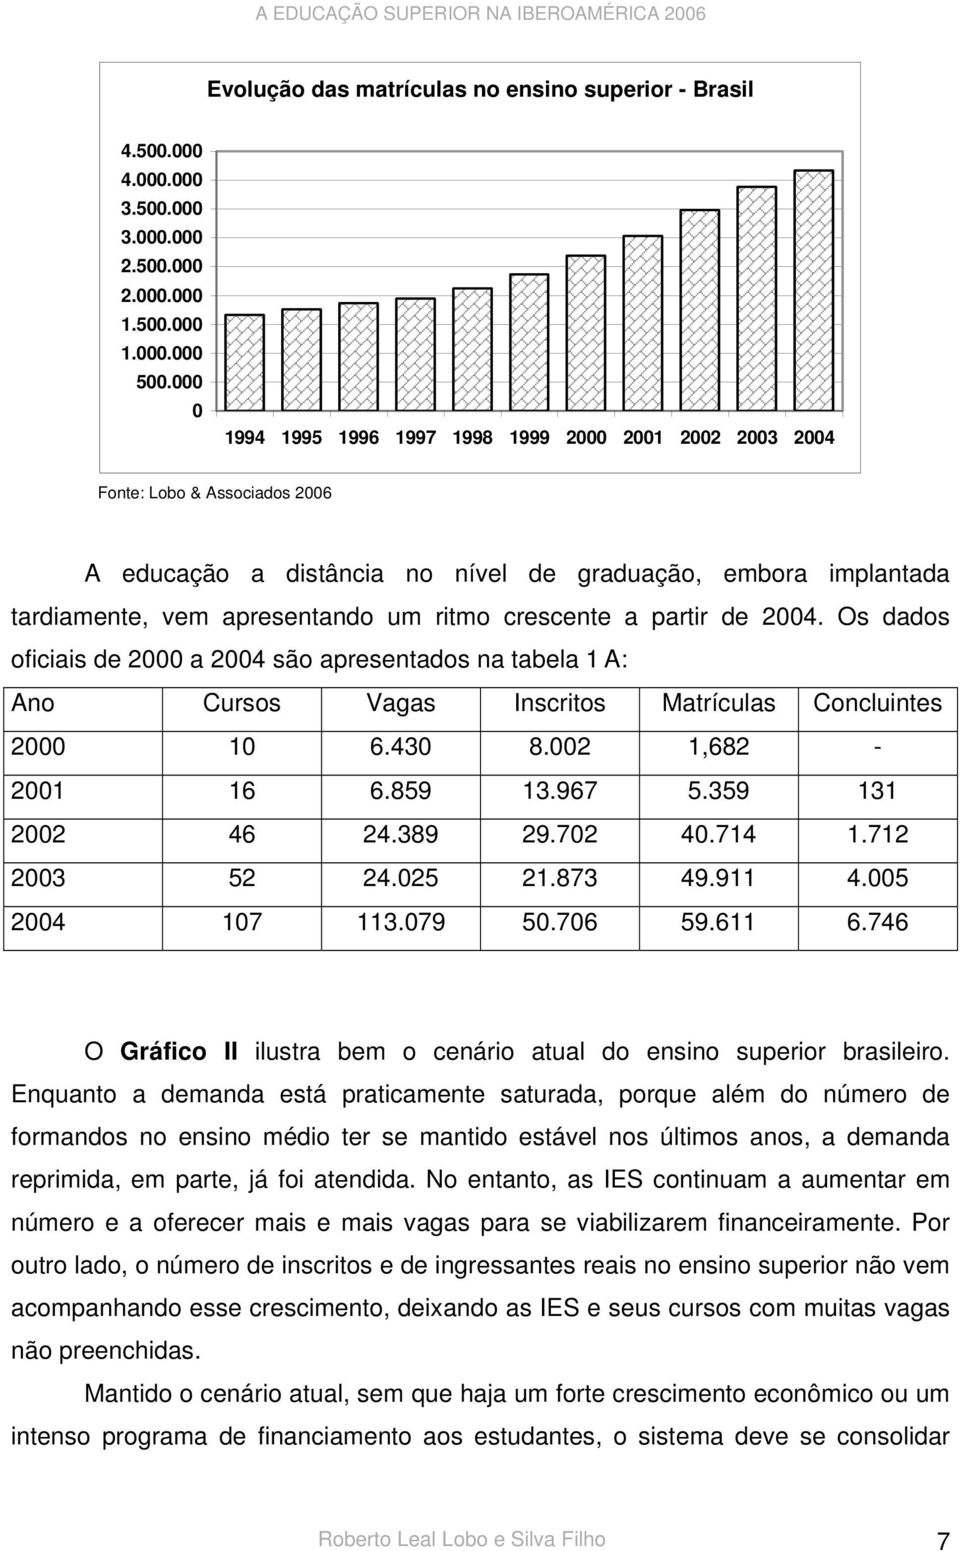 crescente a partir de 2004. Os dados oficiais de 2000 a 2004 são apresentados na tabela 1 A: Ano Cursos Vagas Inscritos Matrículas Concluintes 2000 10 6.430 8.002 1,682-2001 16 6.859 13.967 5.